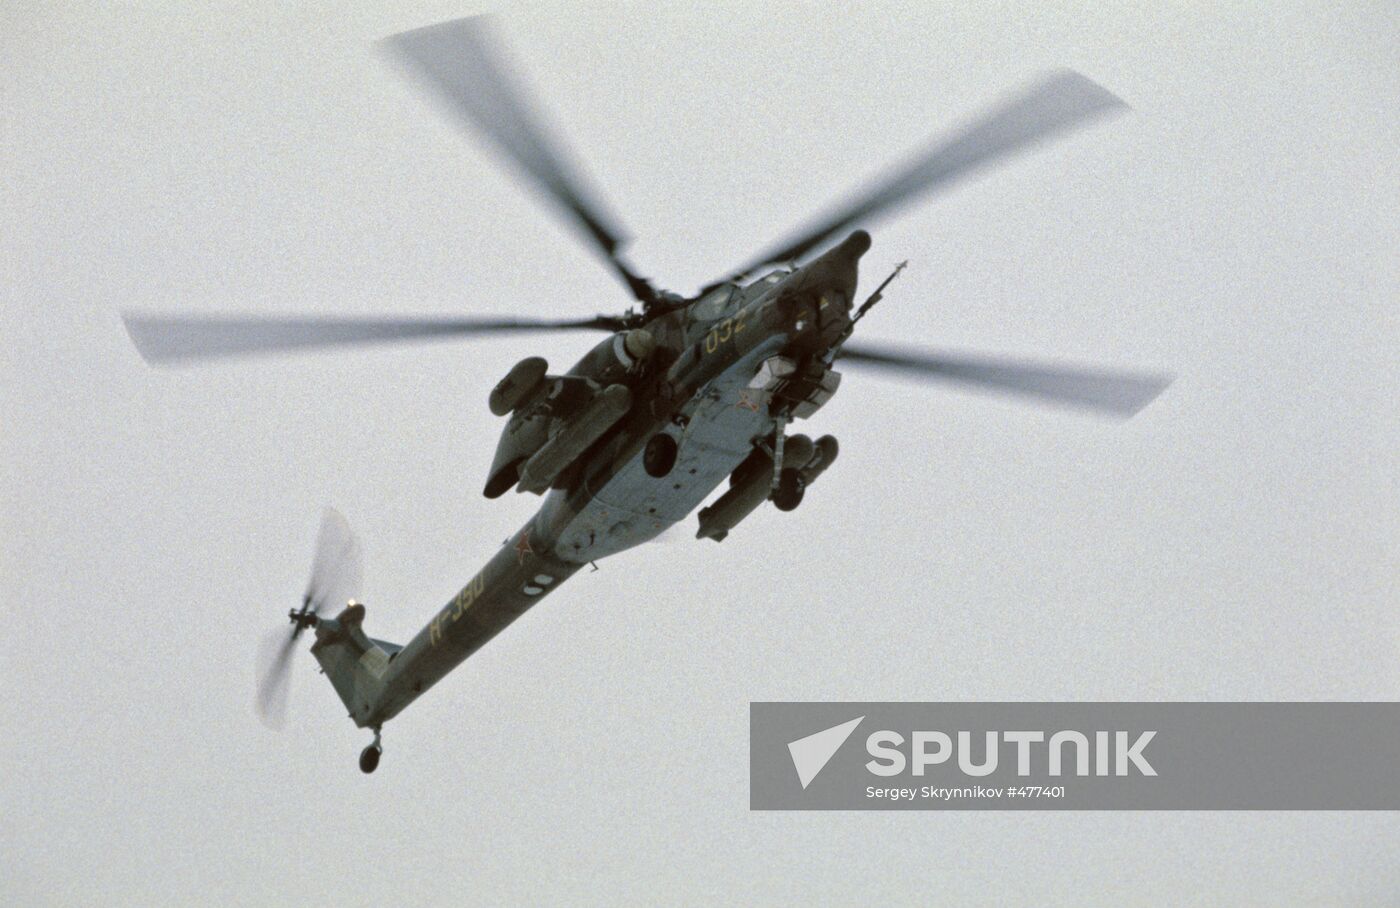 Soviet Mi-28 attack helicopter